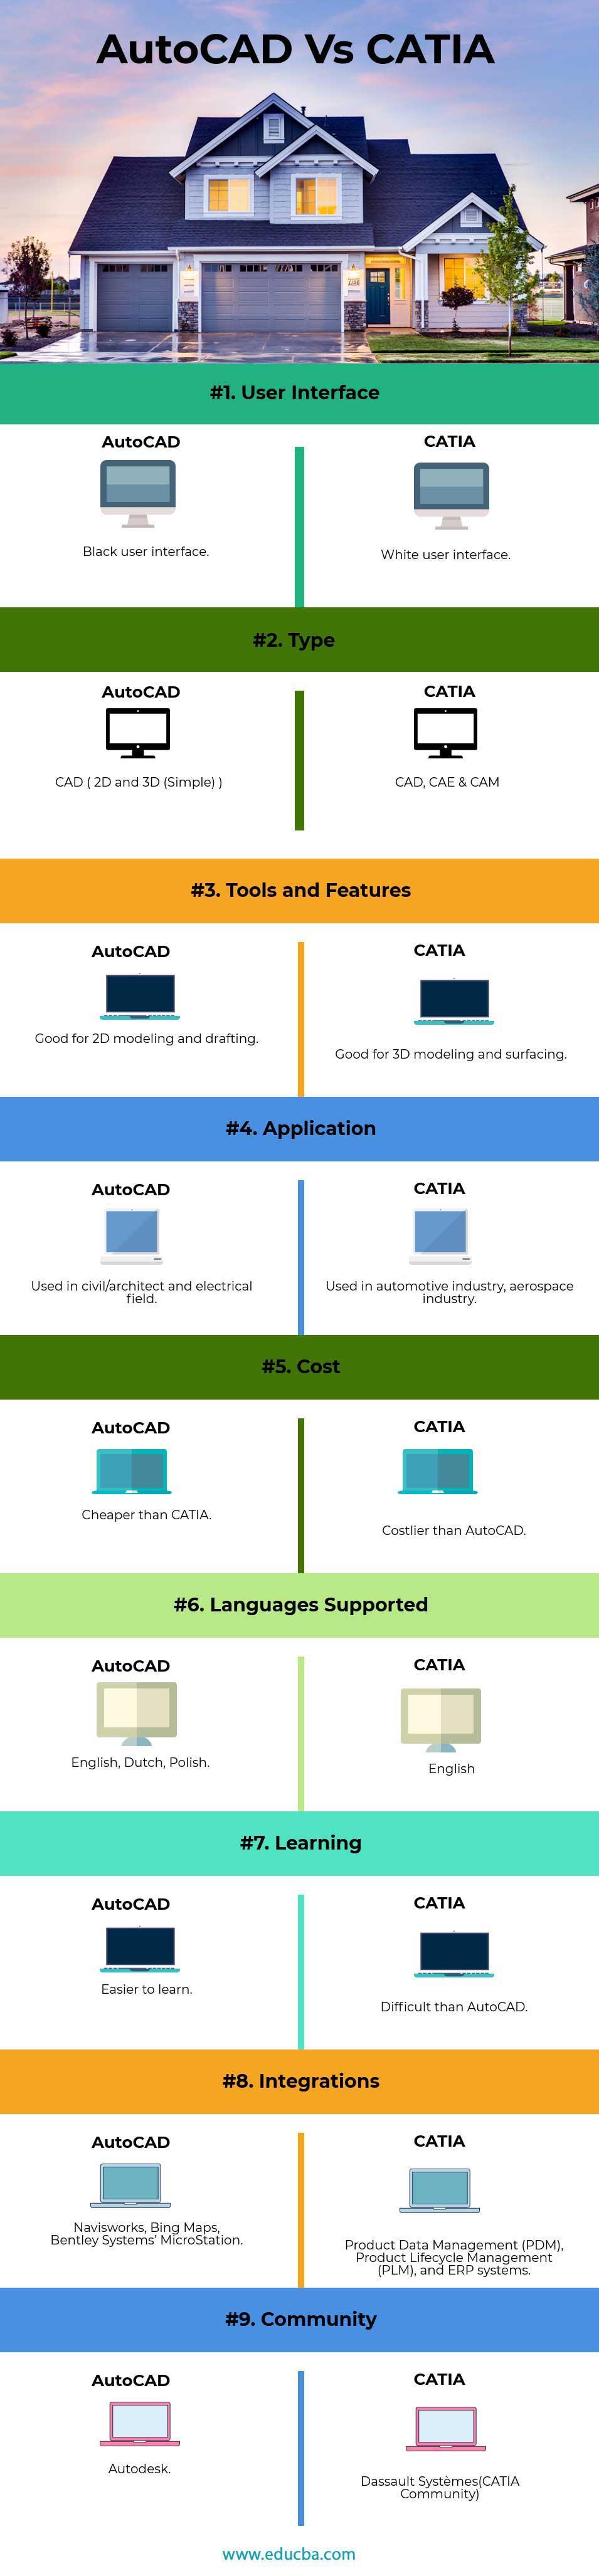 Catia Vs Autocad - Uma Comparação de Software de Gerenciamento de Projetos